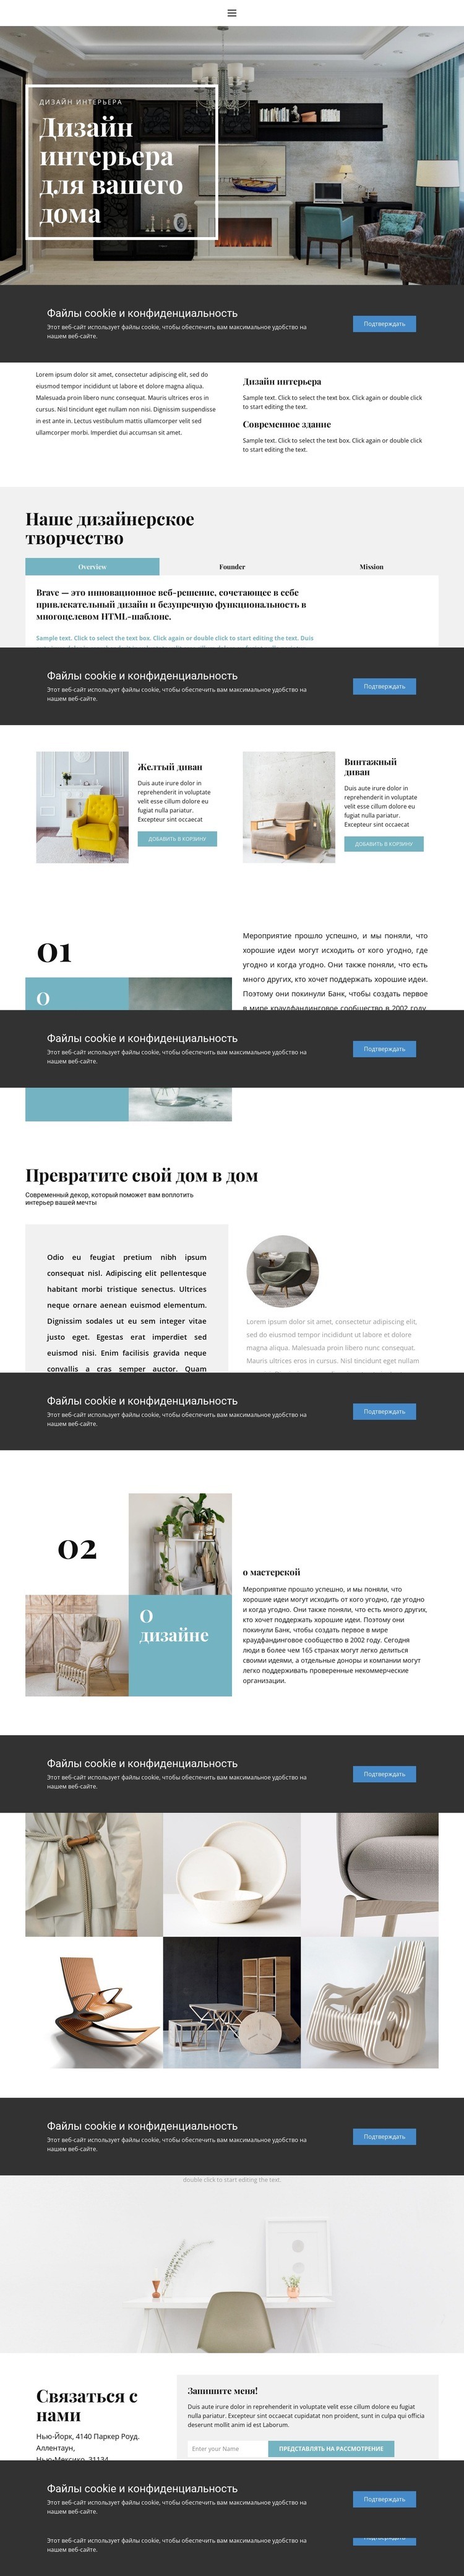 Практичный интерьер Дизайн сайта